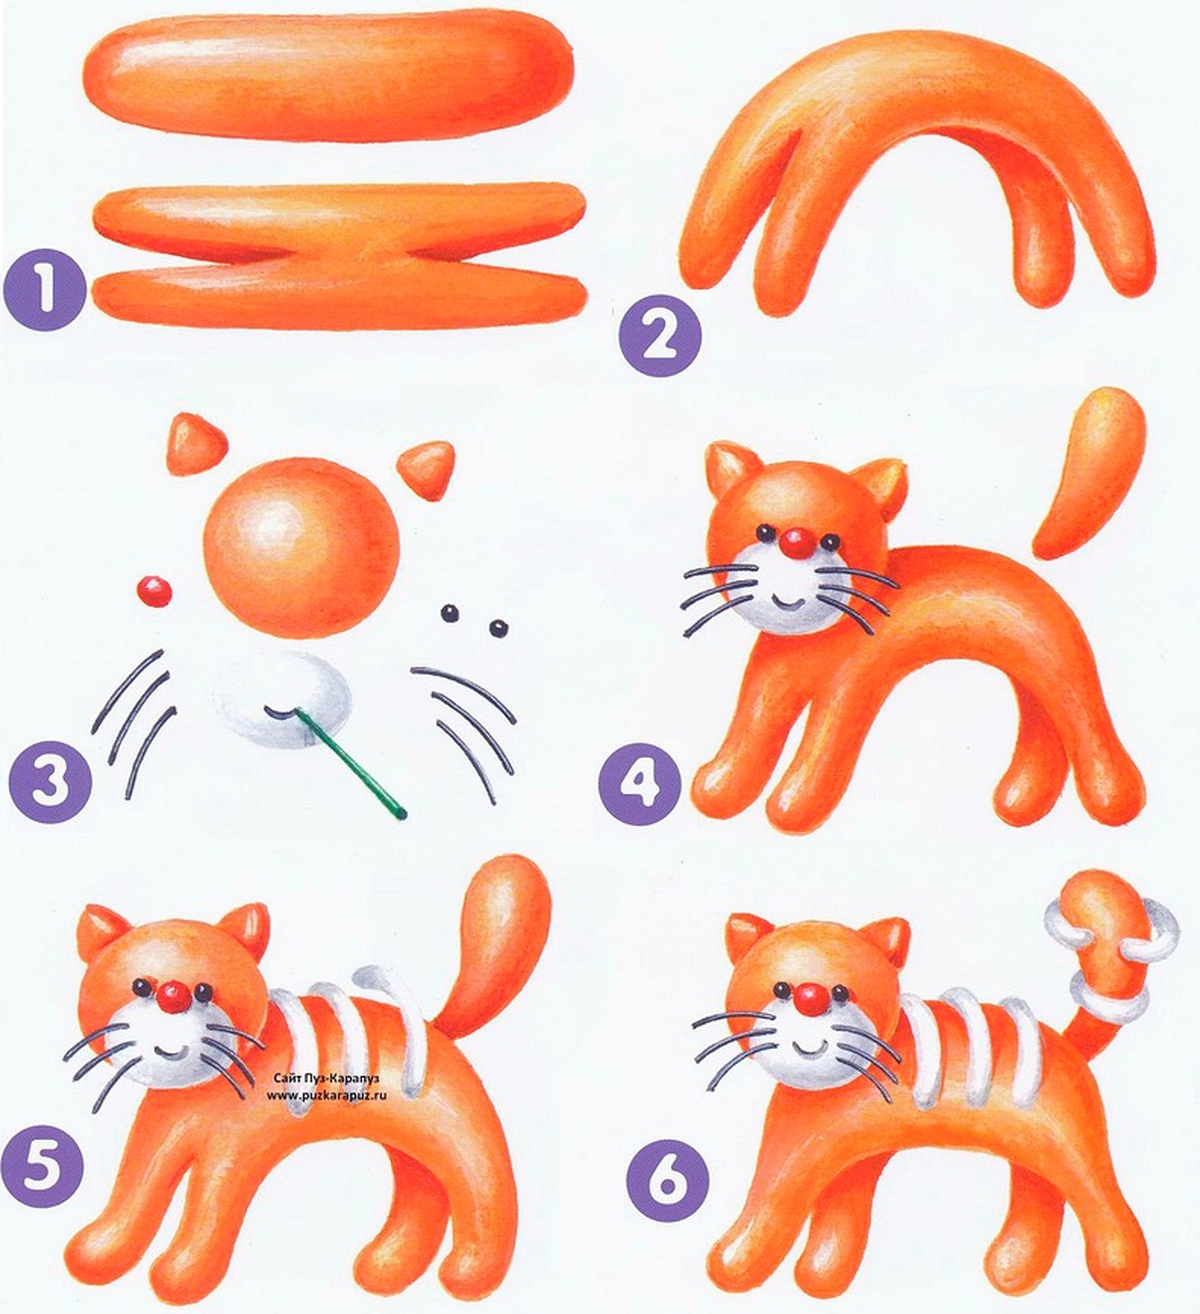 Пошаговая инструкция лепки кота из пластилина